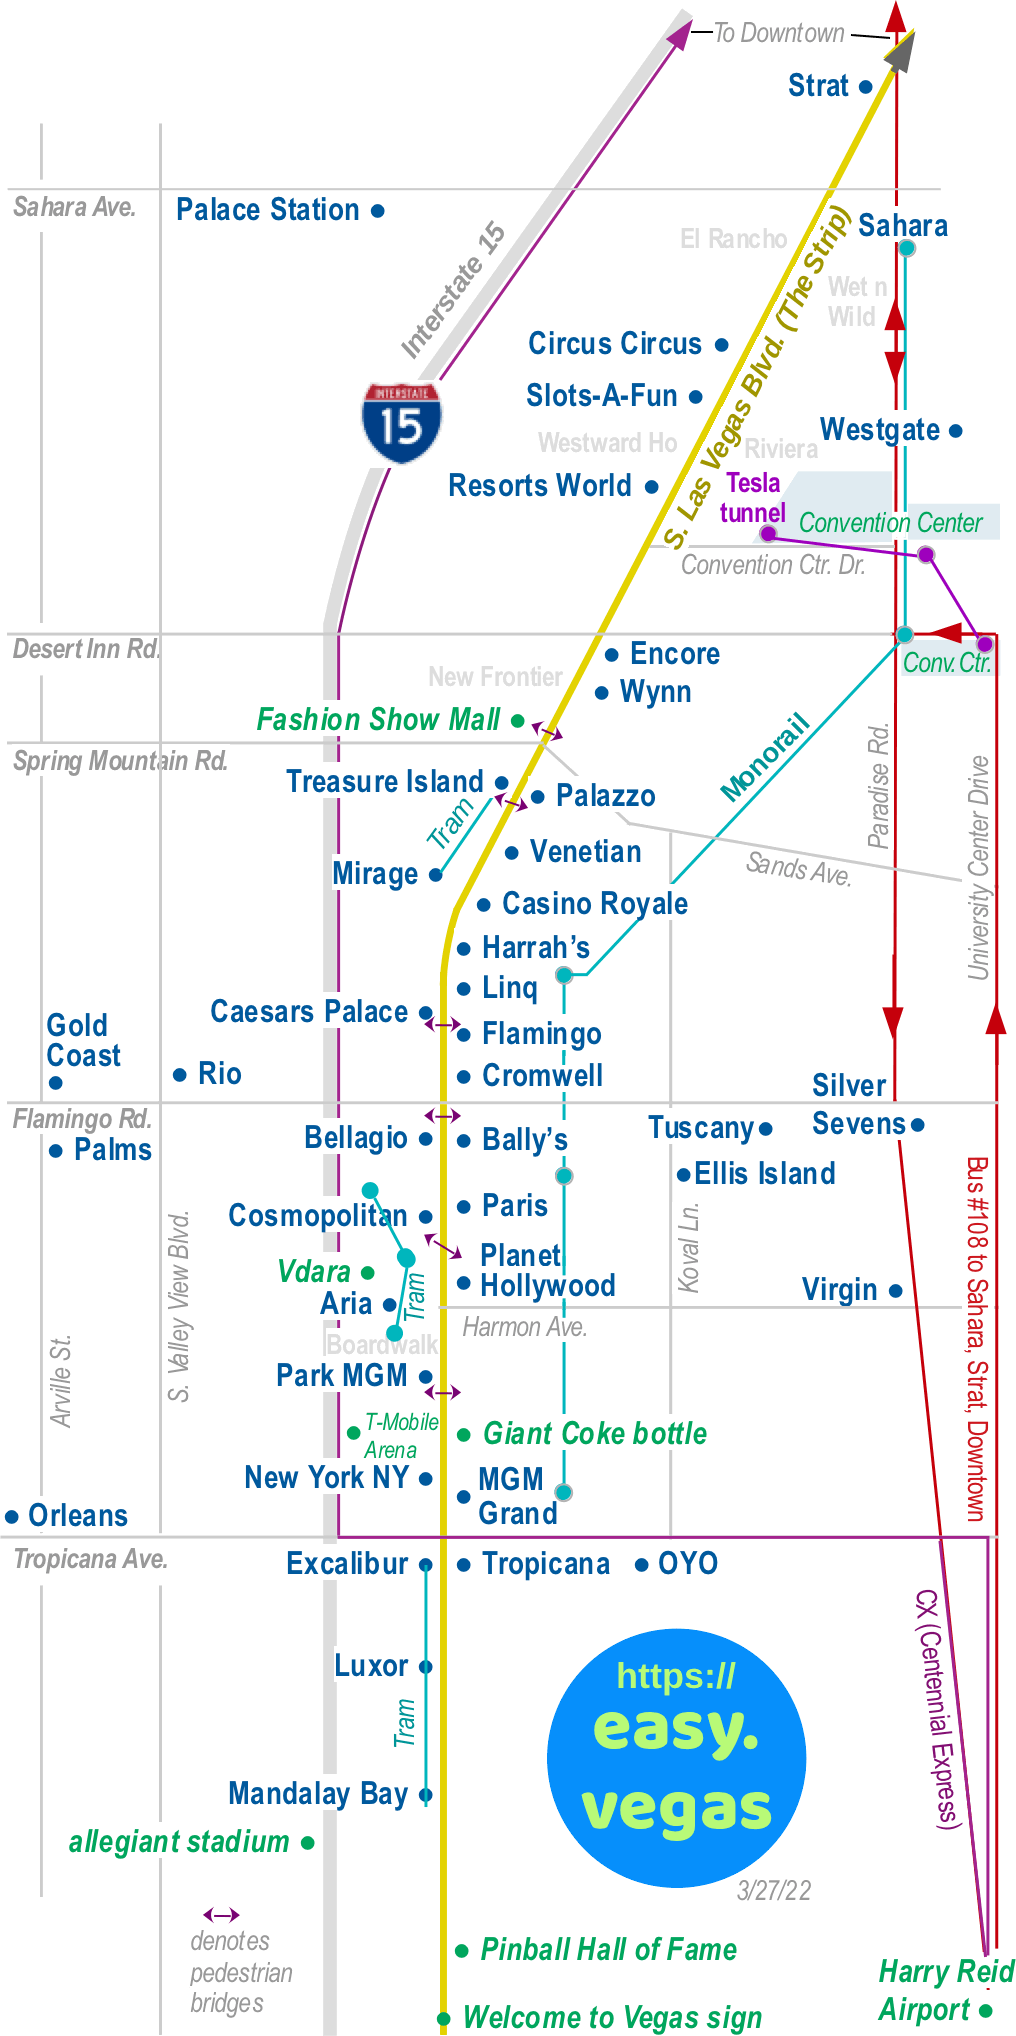 map of las vegas casinos on strip